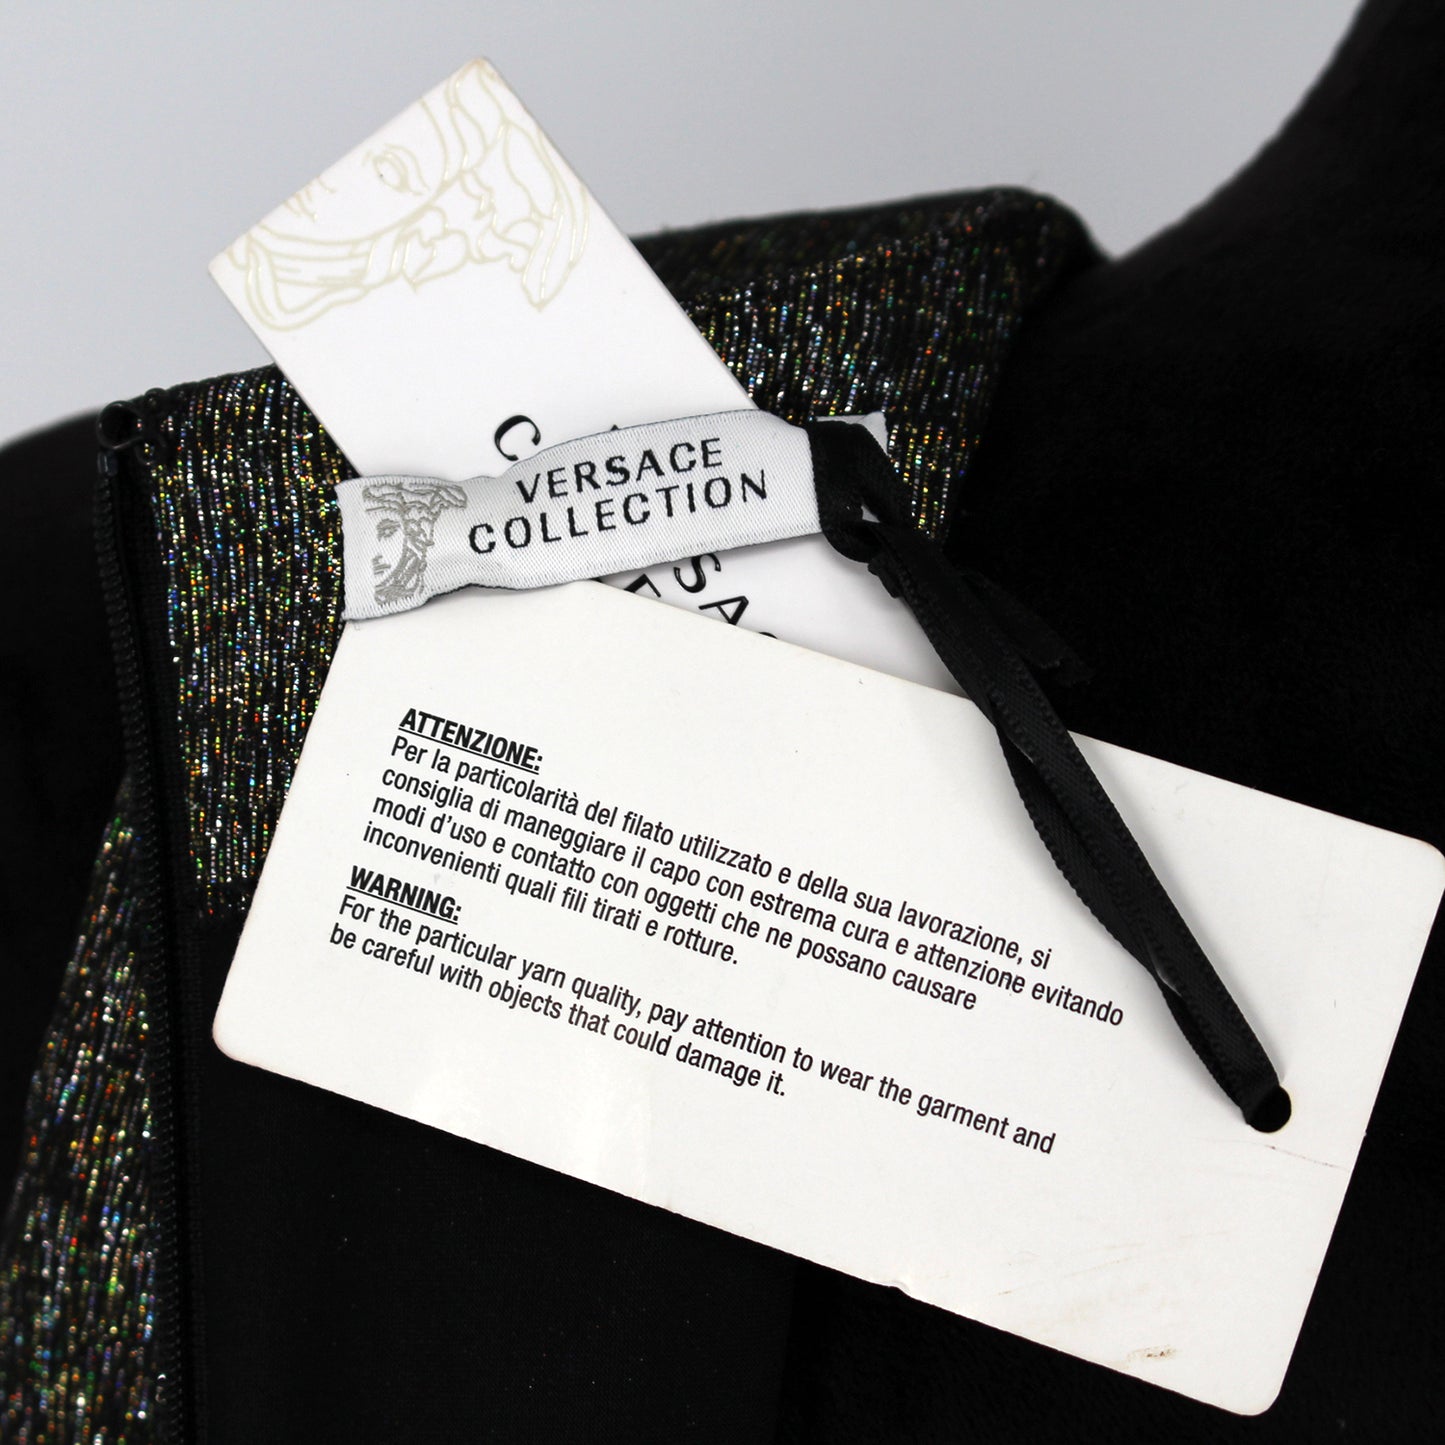 Versace Collection Metallic Zip Front Dress